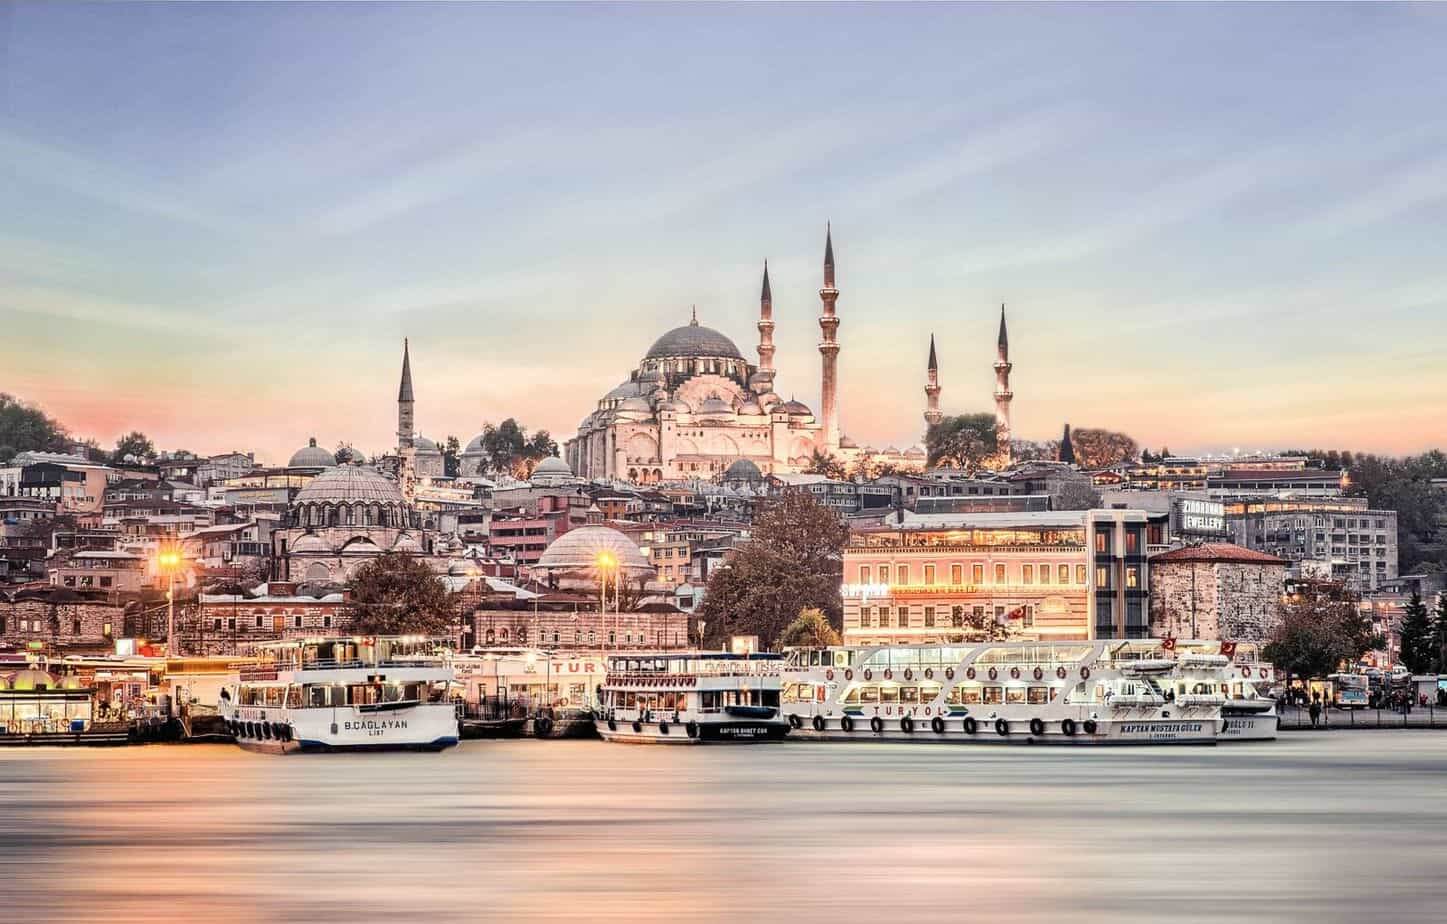 حجز فندق رخيص في اسطنبول (أهم المعلومات والتفاصيل قبل الحجز)